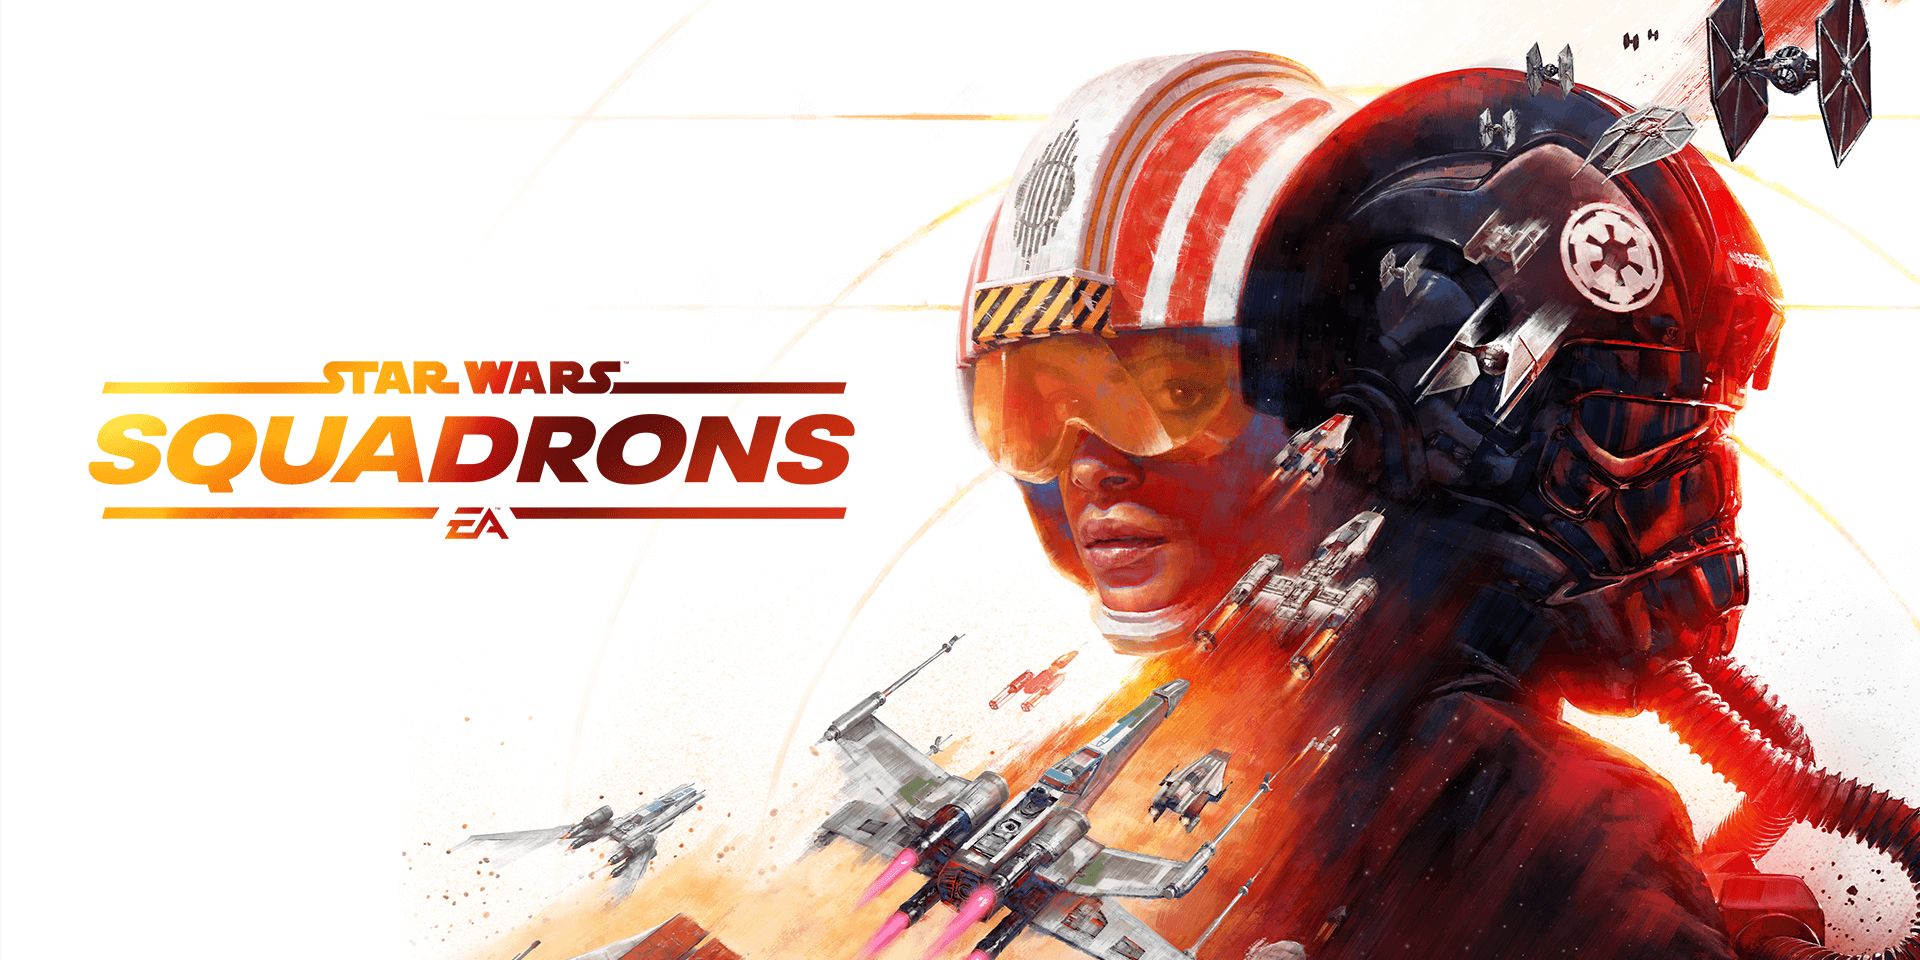 Star Wars: Revisión de escuadrones: diversión de altos vuelos